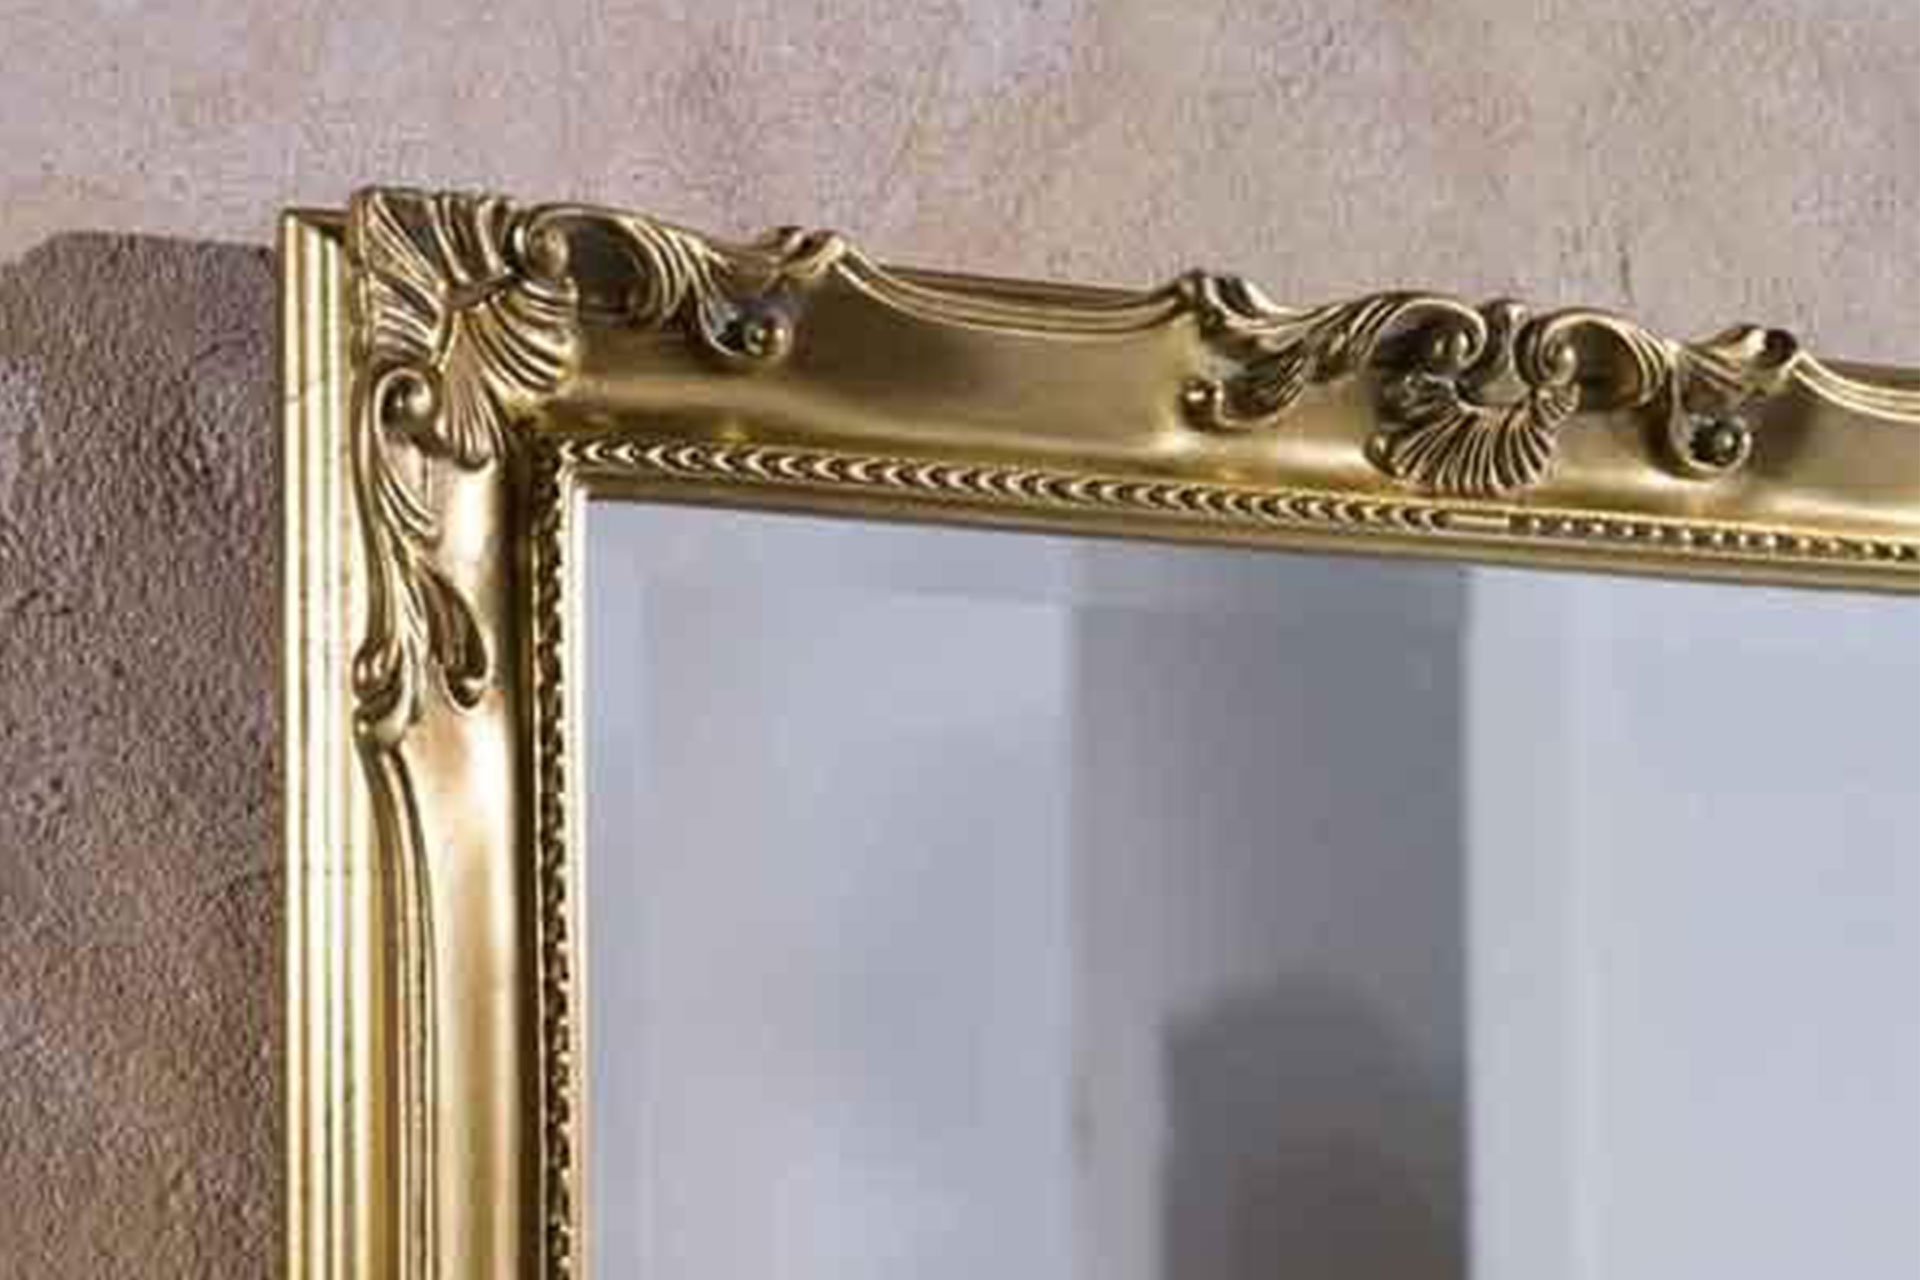 Modell Tarragonai, rechteckig, Barockspiegel, Style: klassisch, Blattgold, Herstellung: ASR-Rahmendesign Material: Holz, Spiegel Facette, Ausschnitt Ecke